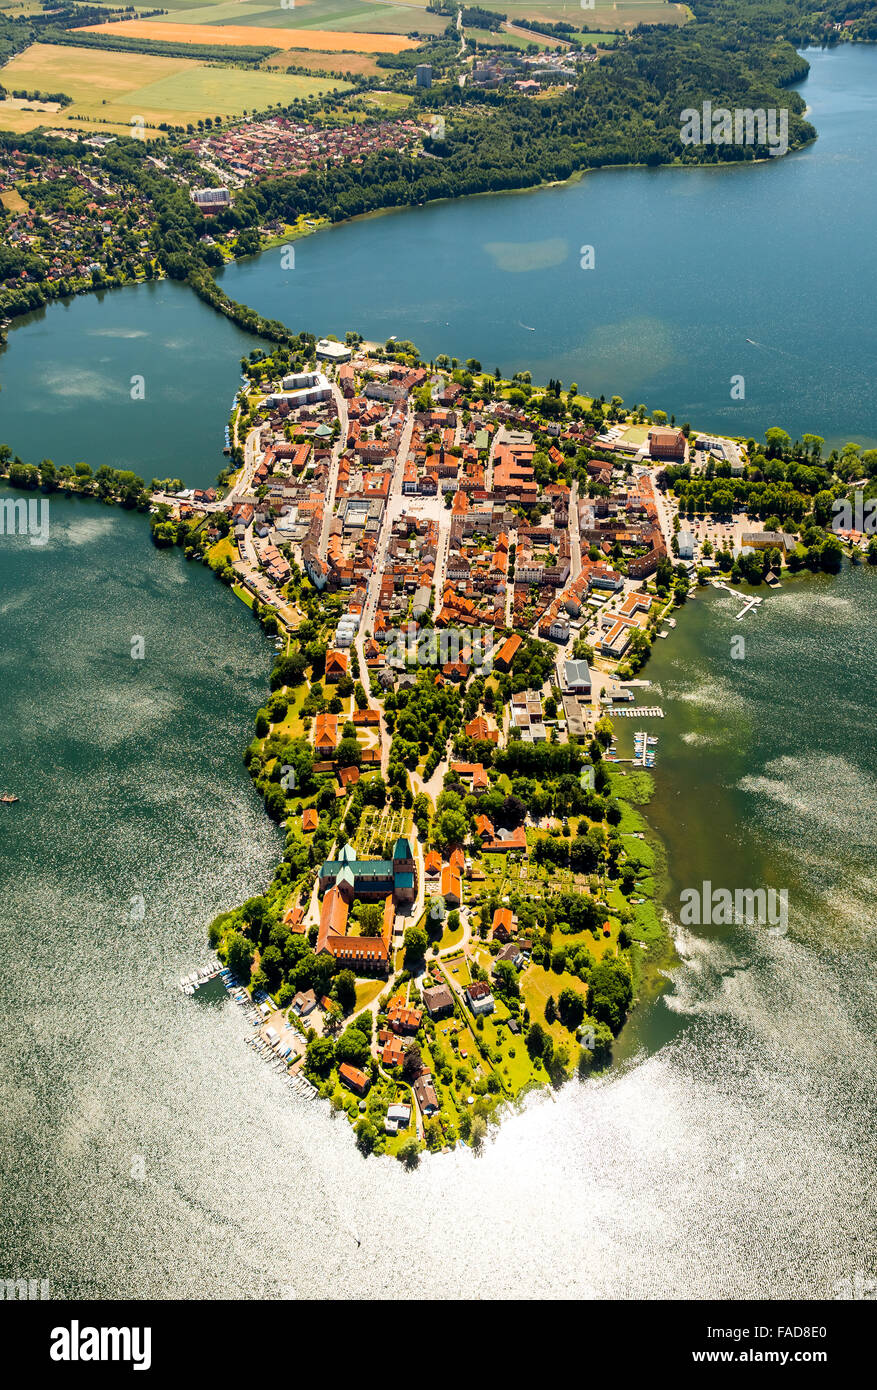 Aerial view, Peninsula, Lake Ratzeburg, Domsee, Küchensee, Ratzeburg, Lübeck Bay, Hansestadt, Schleswig-Holstein, Germany, Stock Photo